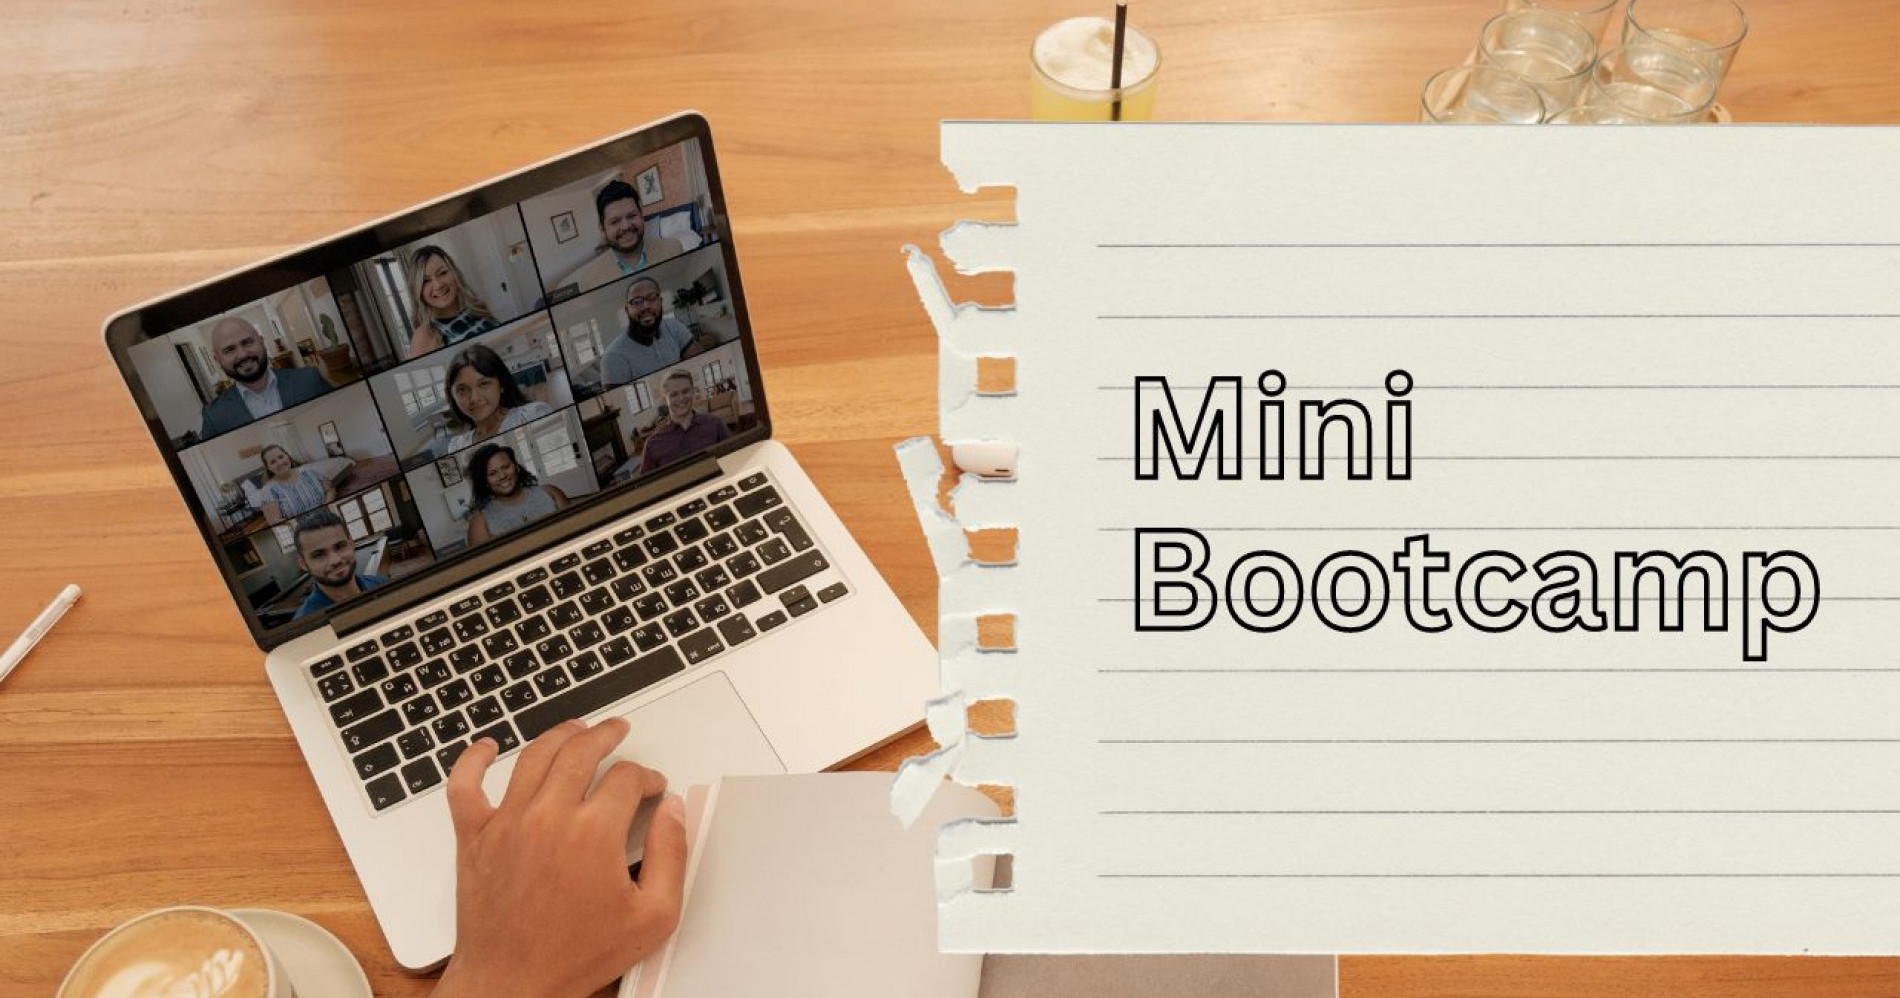 Istilah bootcamp dan mini bootcamp juga semakin tidak asing karena banyak lembaga pelatihan online saat ini menawarkan produk pelatihan berupa bootcamp dan mini bootcamp. Image: Canva